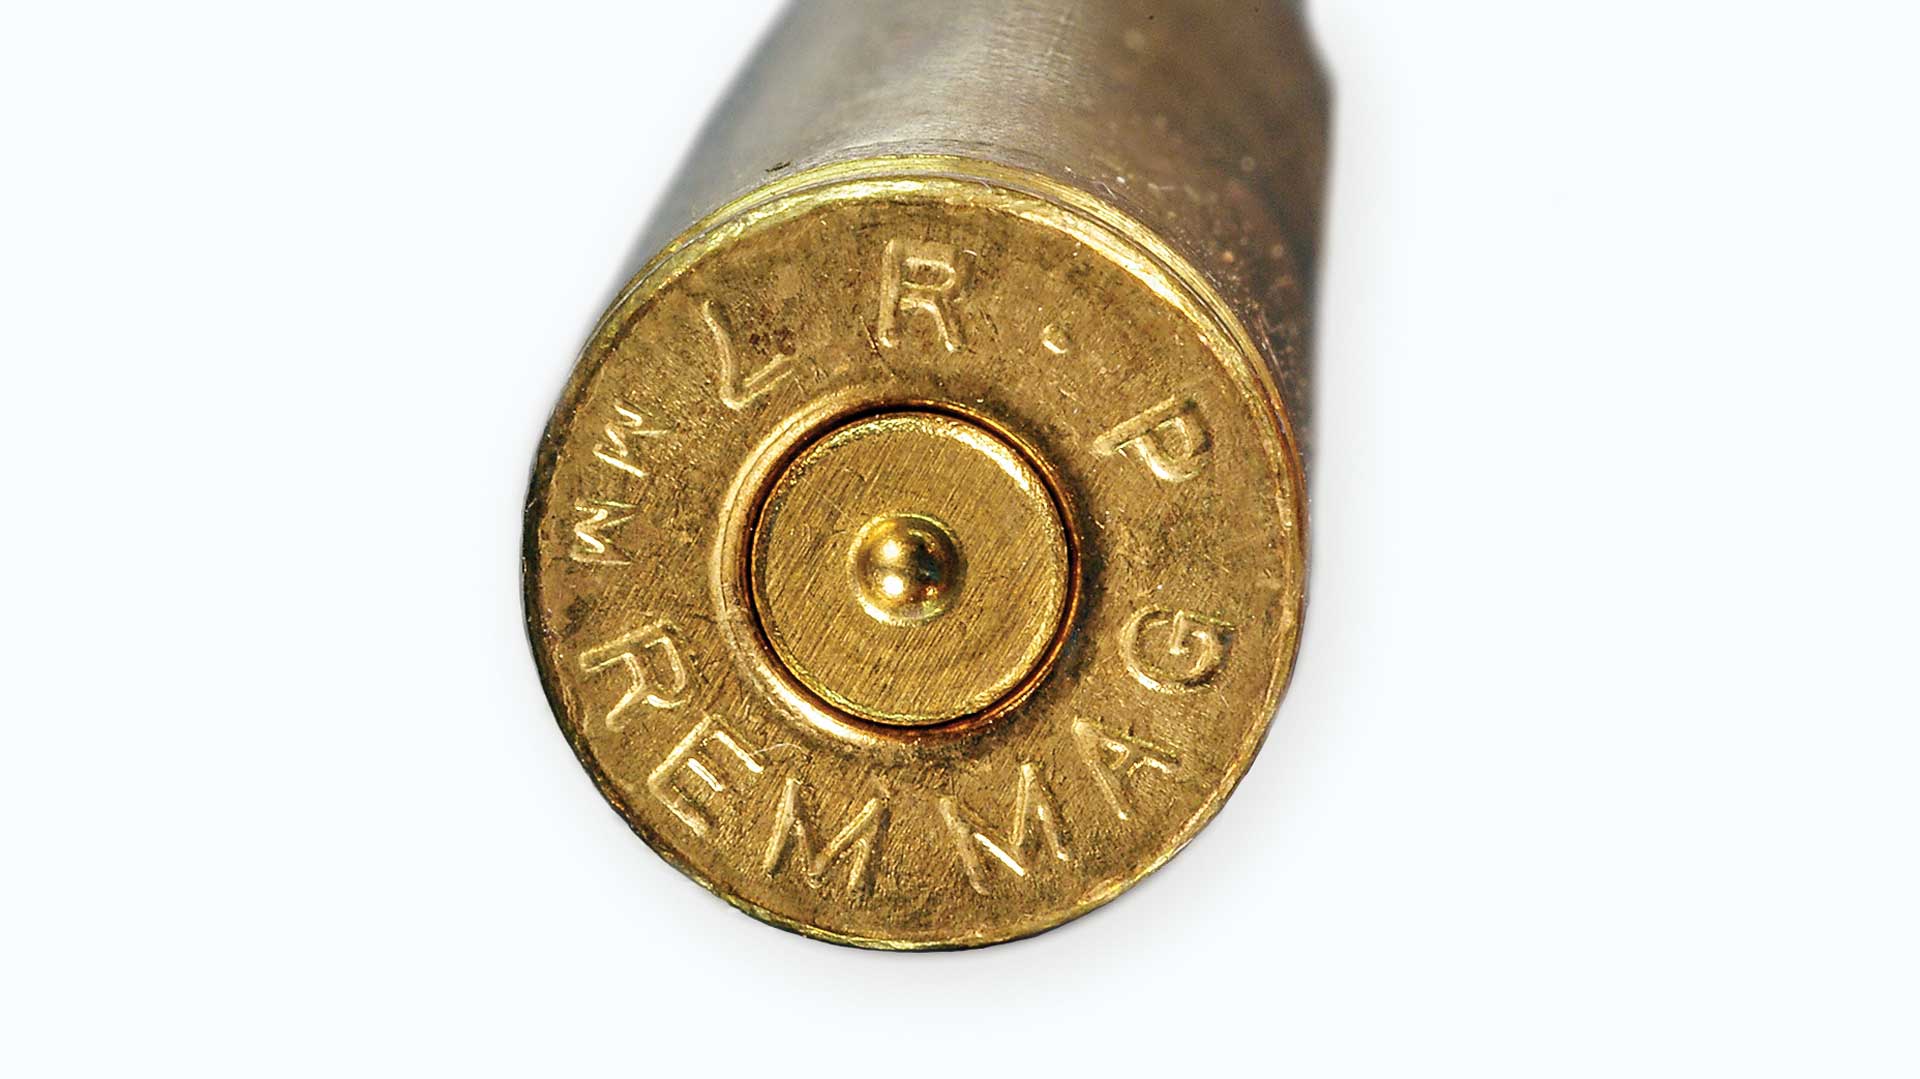 Remington gun club target loads - nsjawer